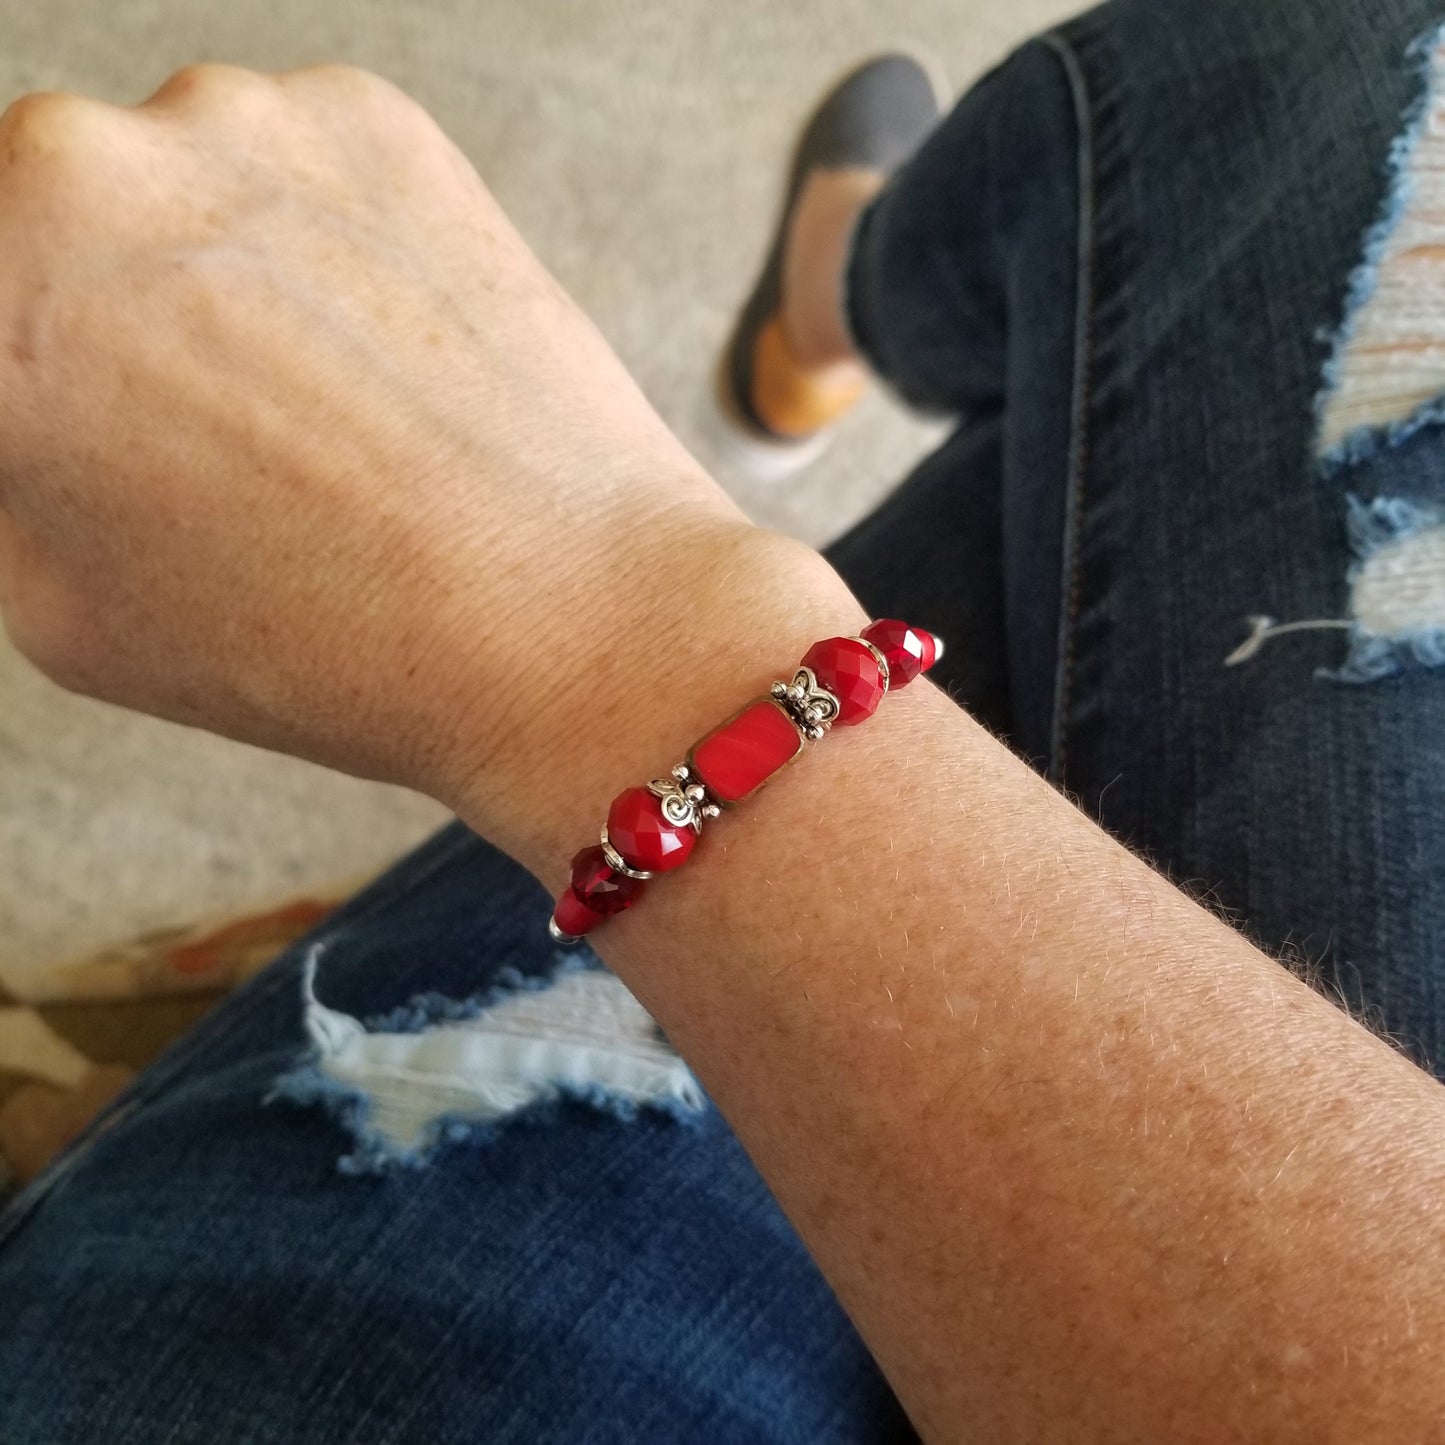 Red glass beads wrap bracelet on wrist